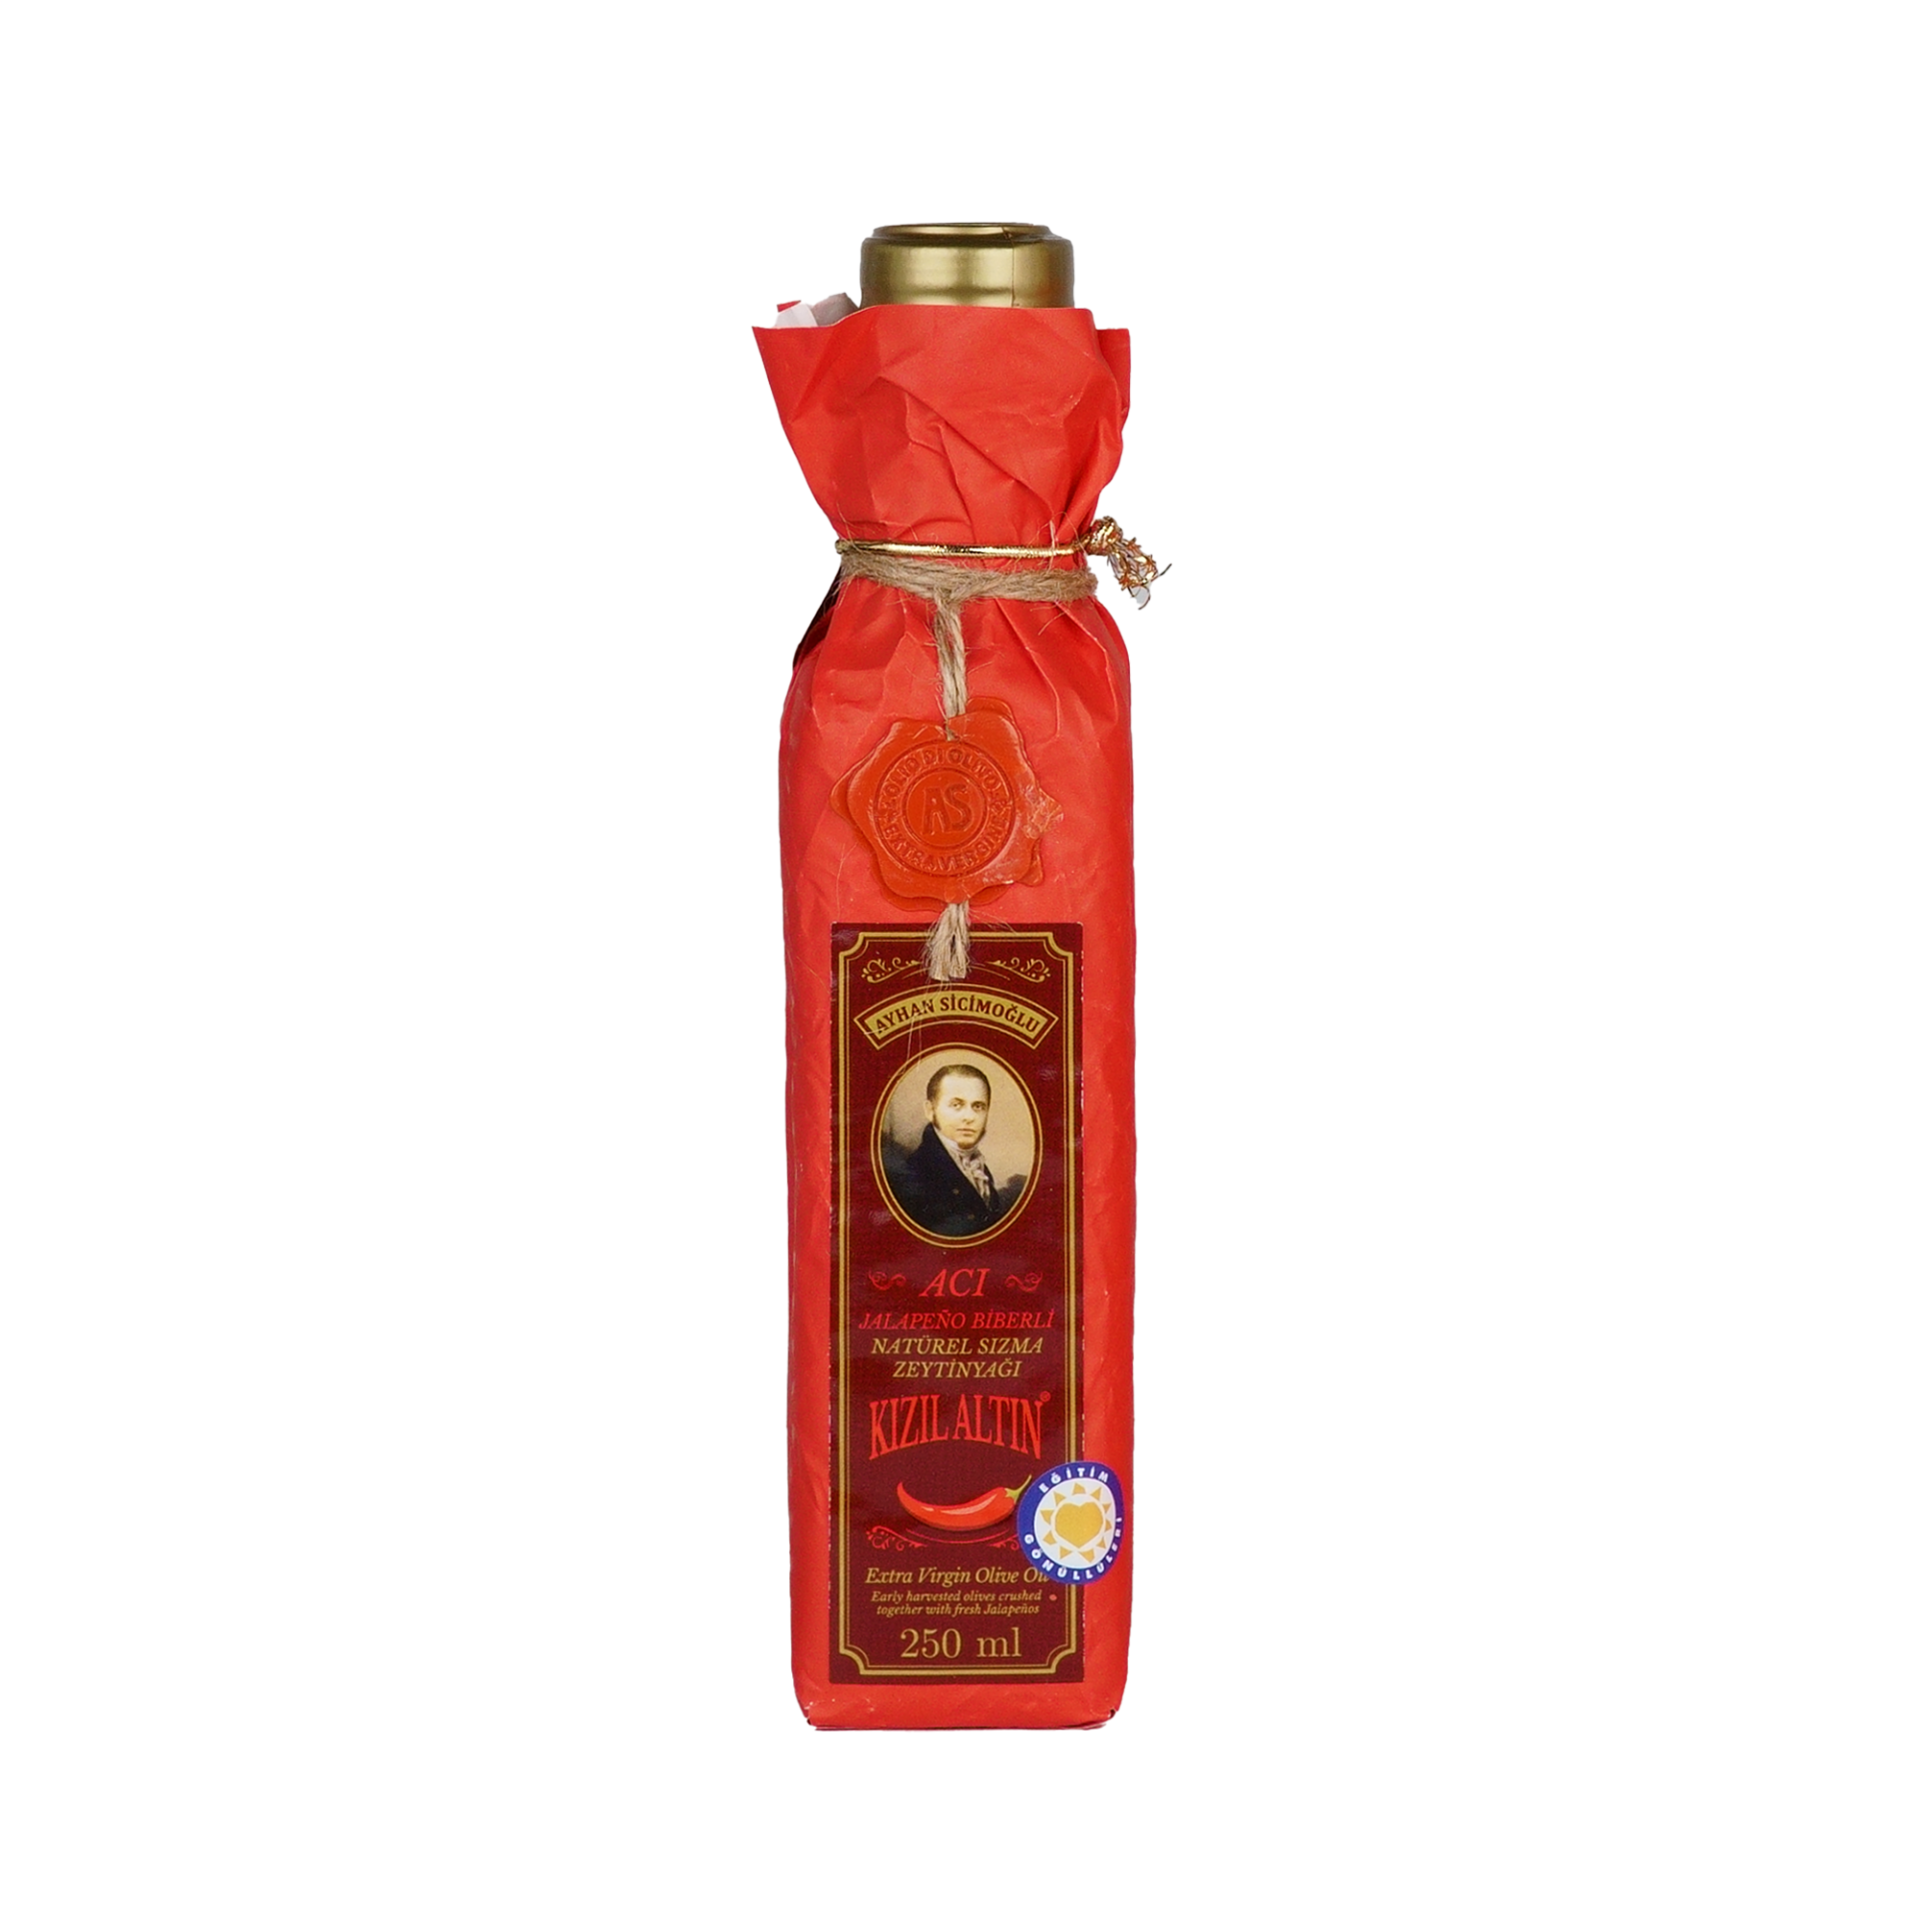 Kızıl Altın Serisi 250 ml Acı Jalapeño Biberli Natürel Sızma Zeytinyağı (Kargo dahil)